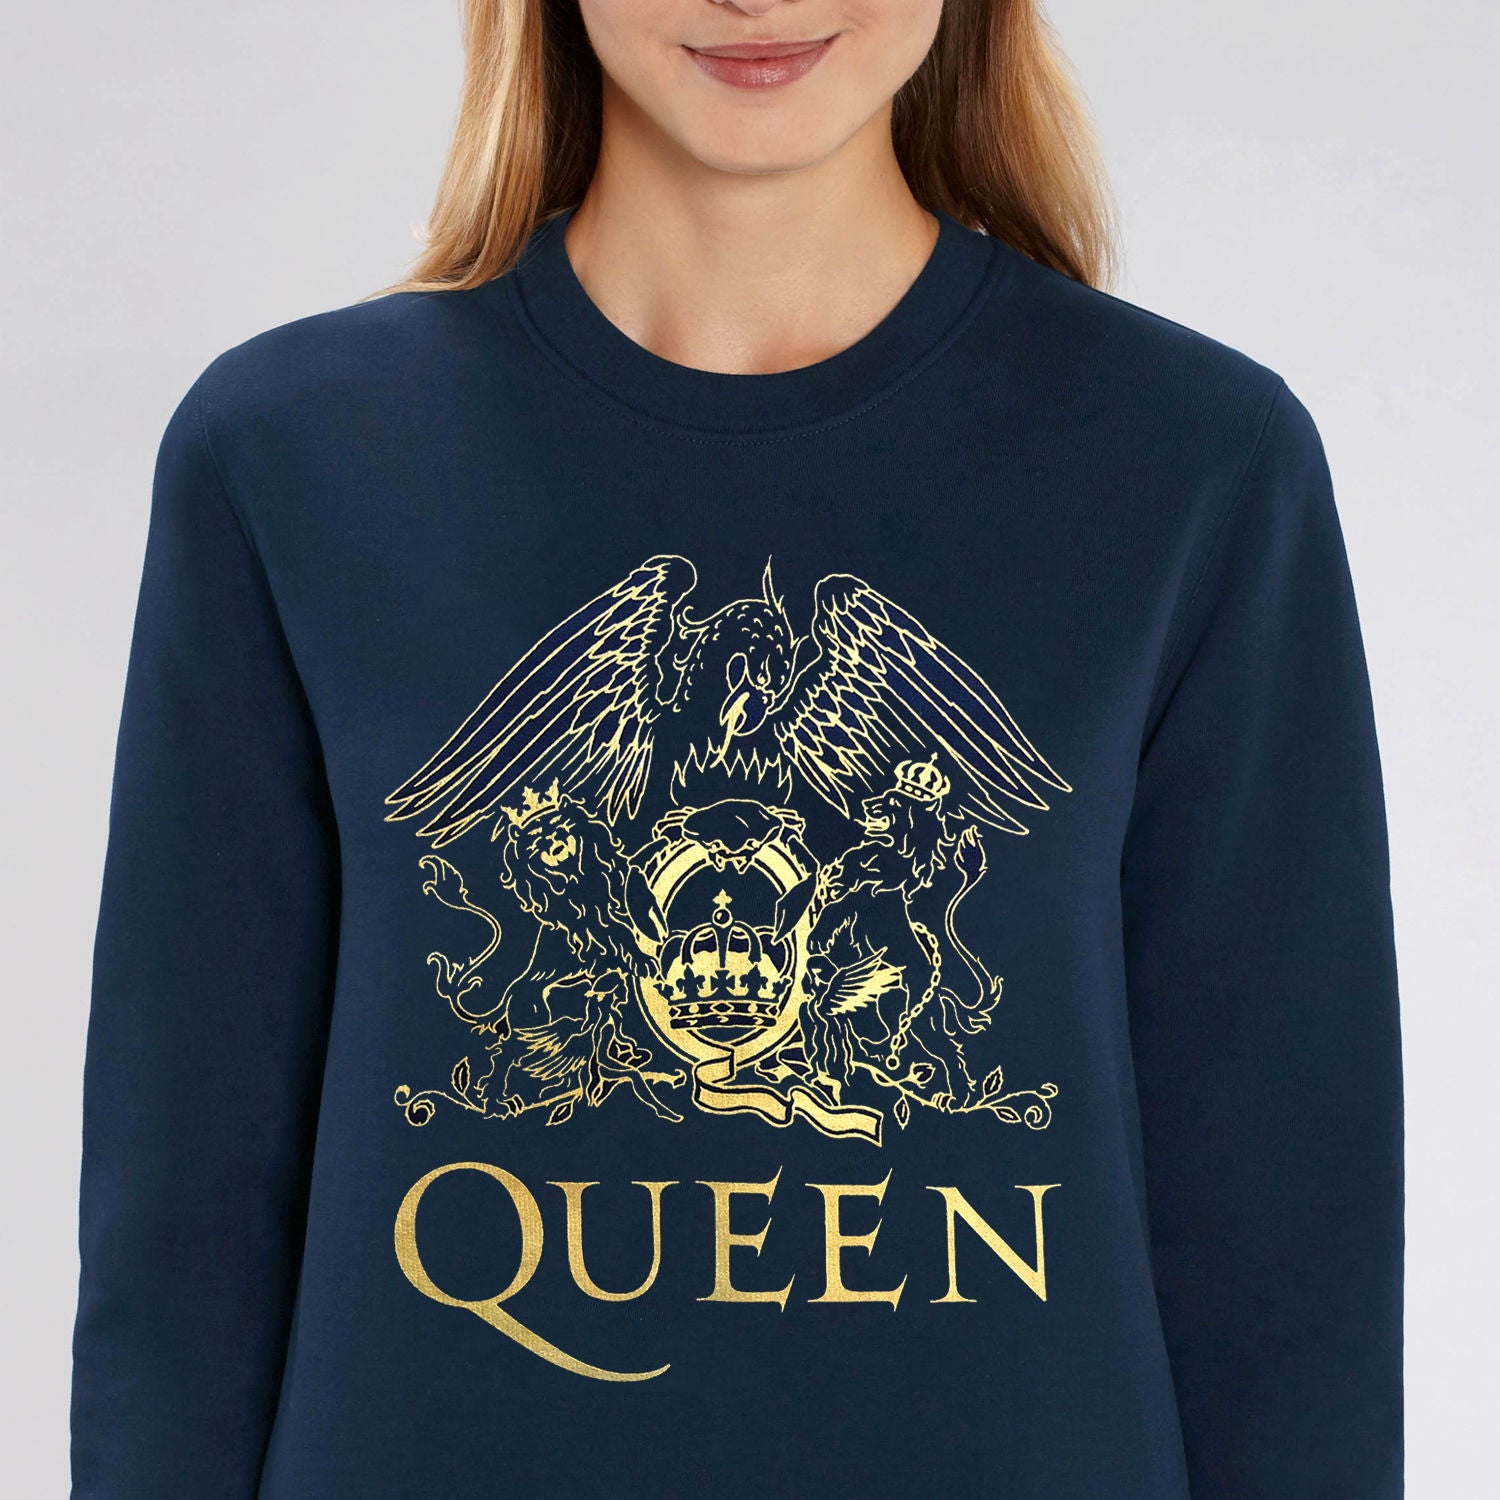 Queen - Gold Crest On French Blue Unisex Super Soft Sweatshirt